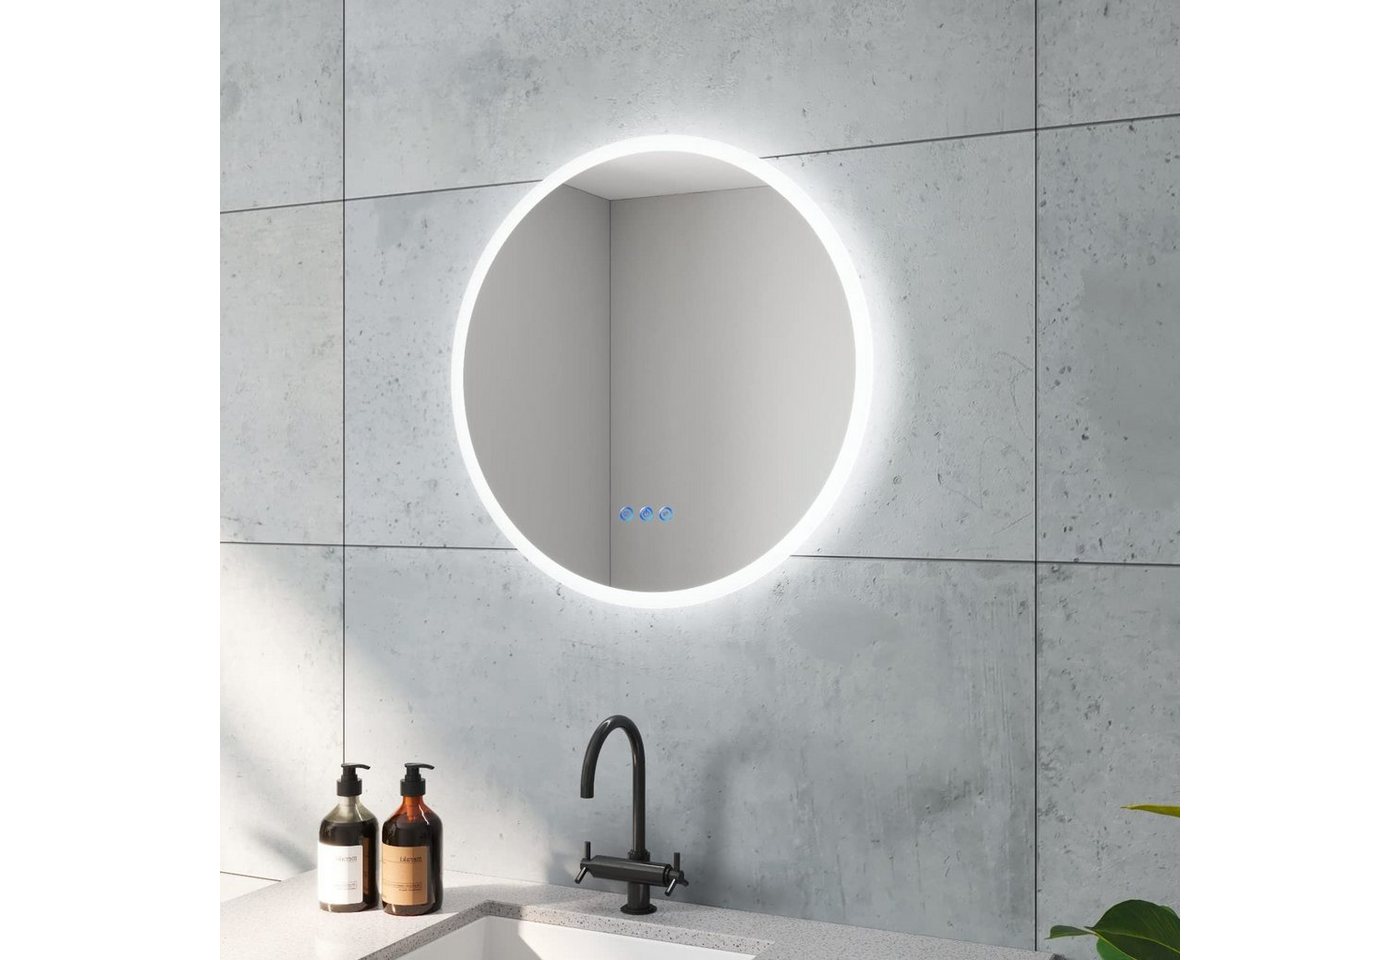 AQUALAVOS Badspiegel Rund Badspiegel mit LED Beleuchtung Dimmbar Beschlagfrei Wandspiegel, 6400K Kaltweiß & Warmweiß 3000K, Touchschalter, Energiesparend von AQUALAVOS